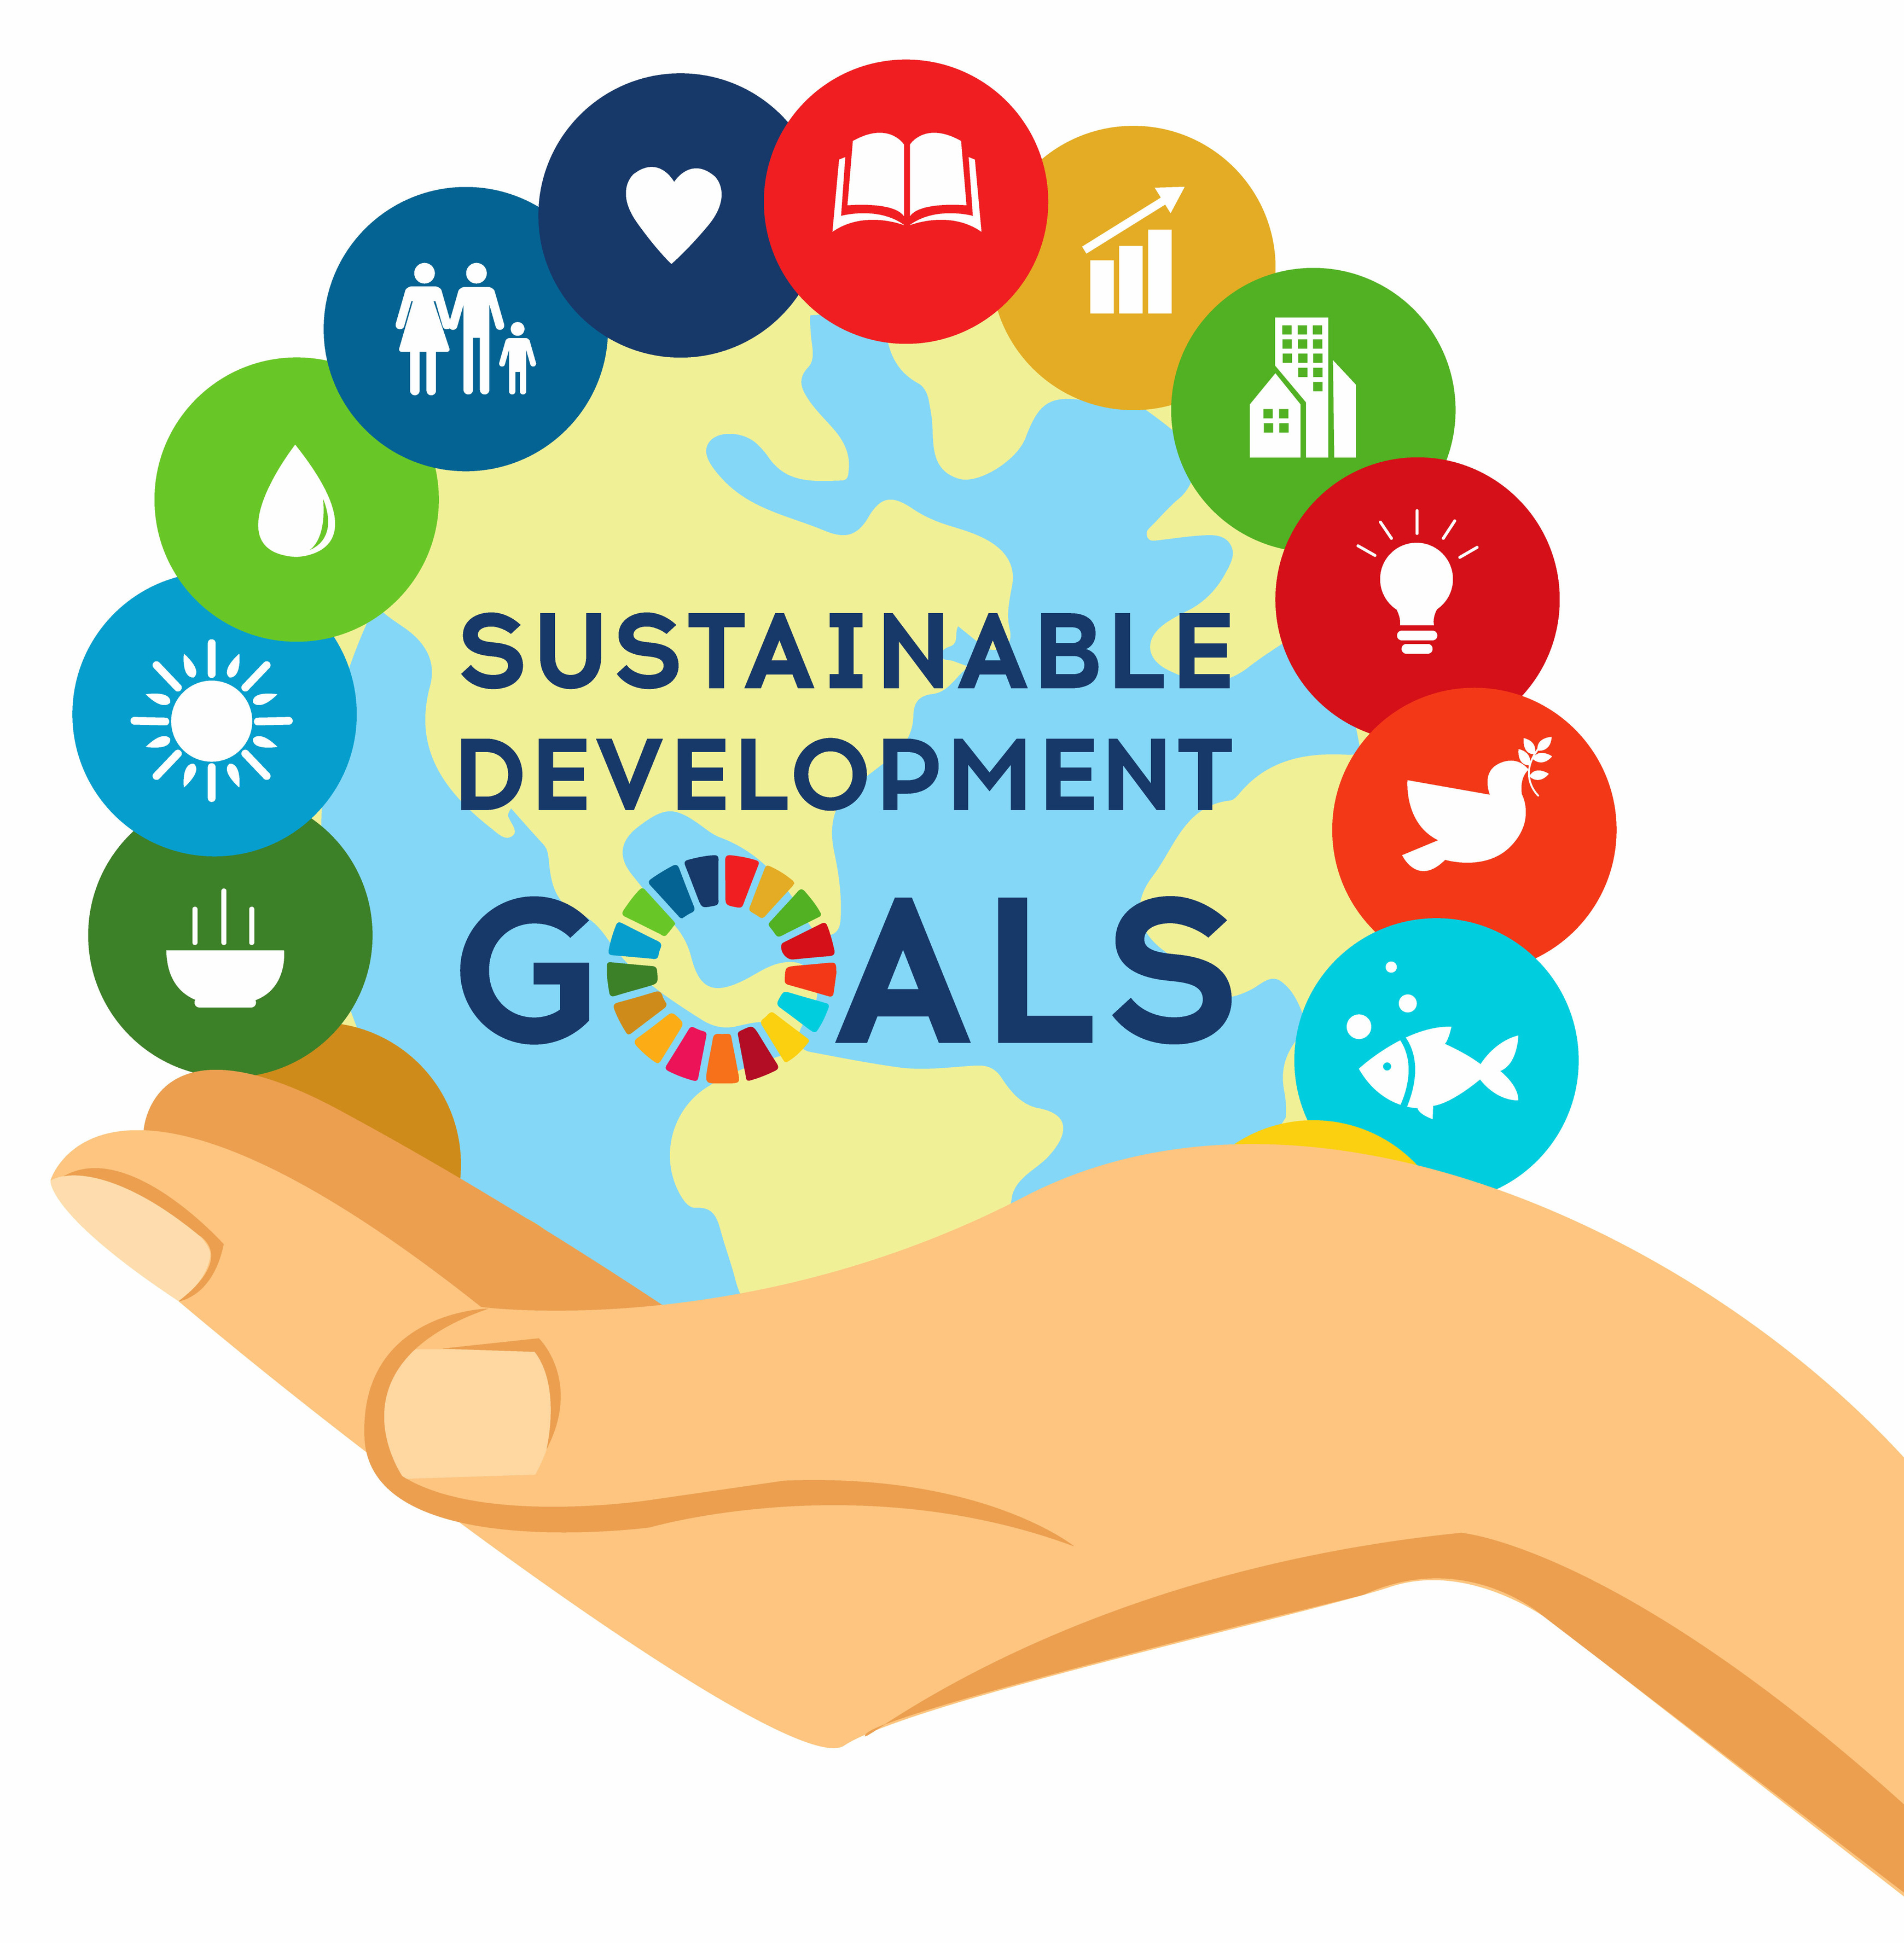 Cíle udržitelného rozvoje (Sustainable Development Goals)